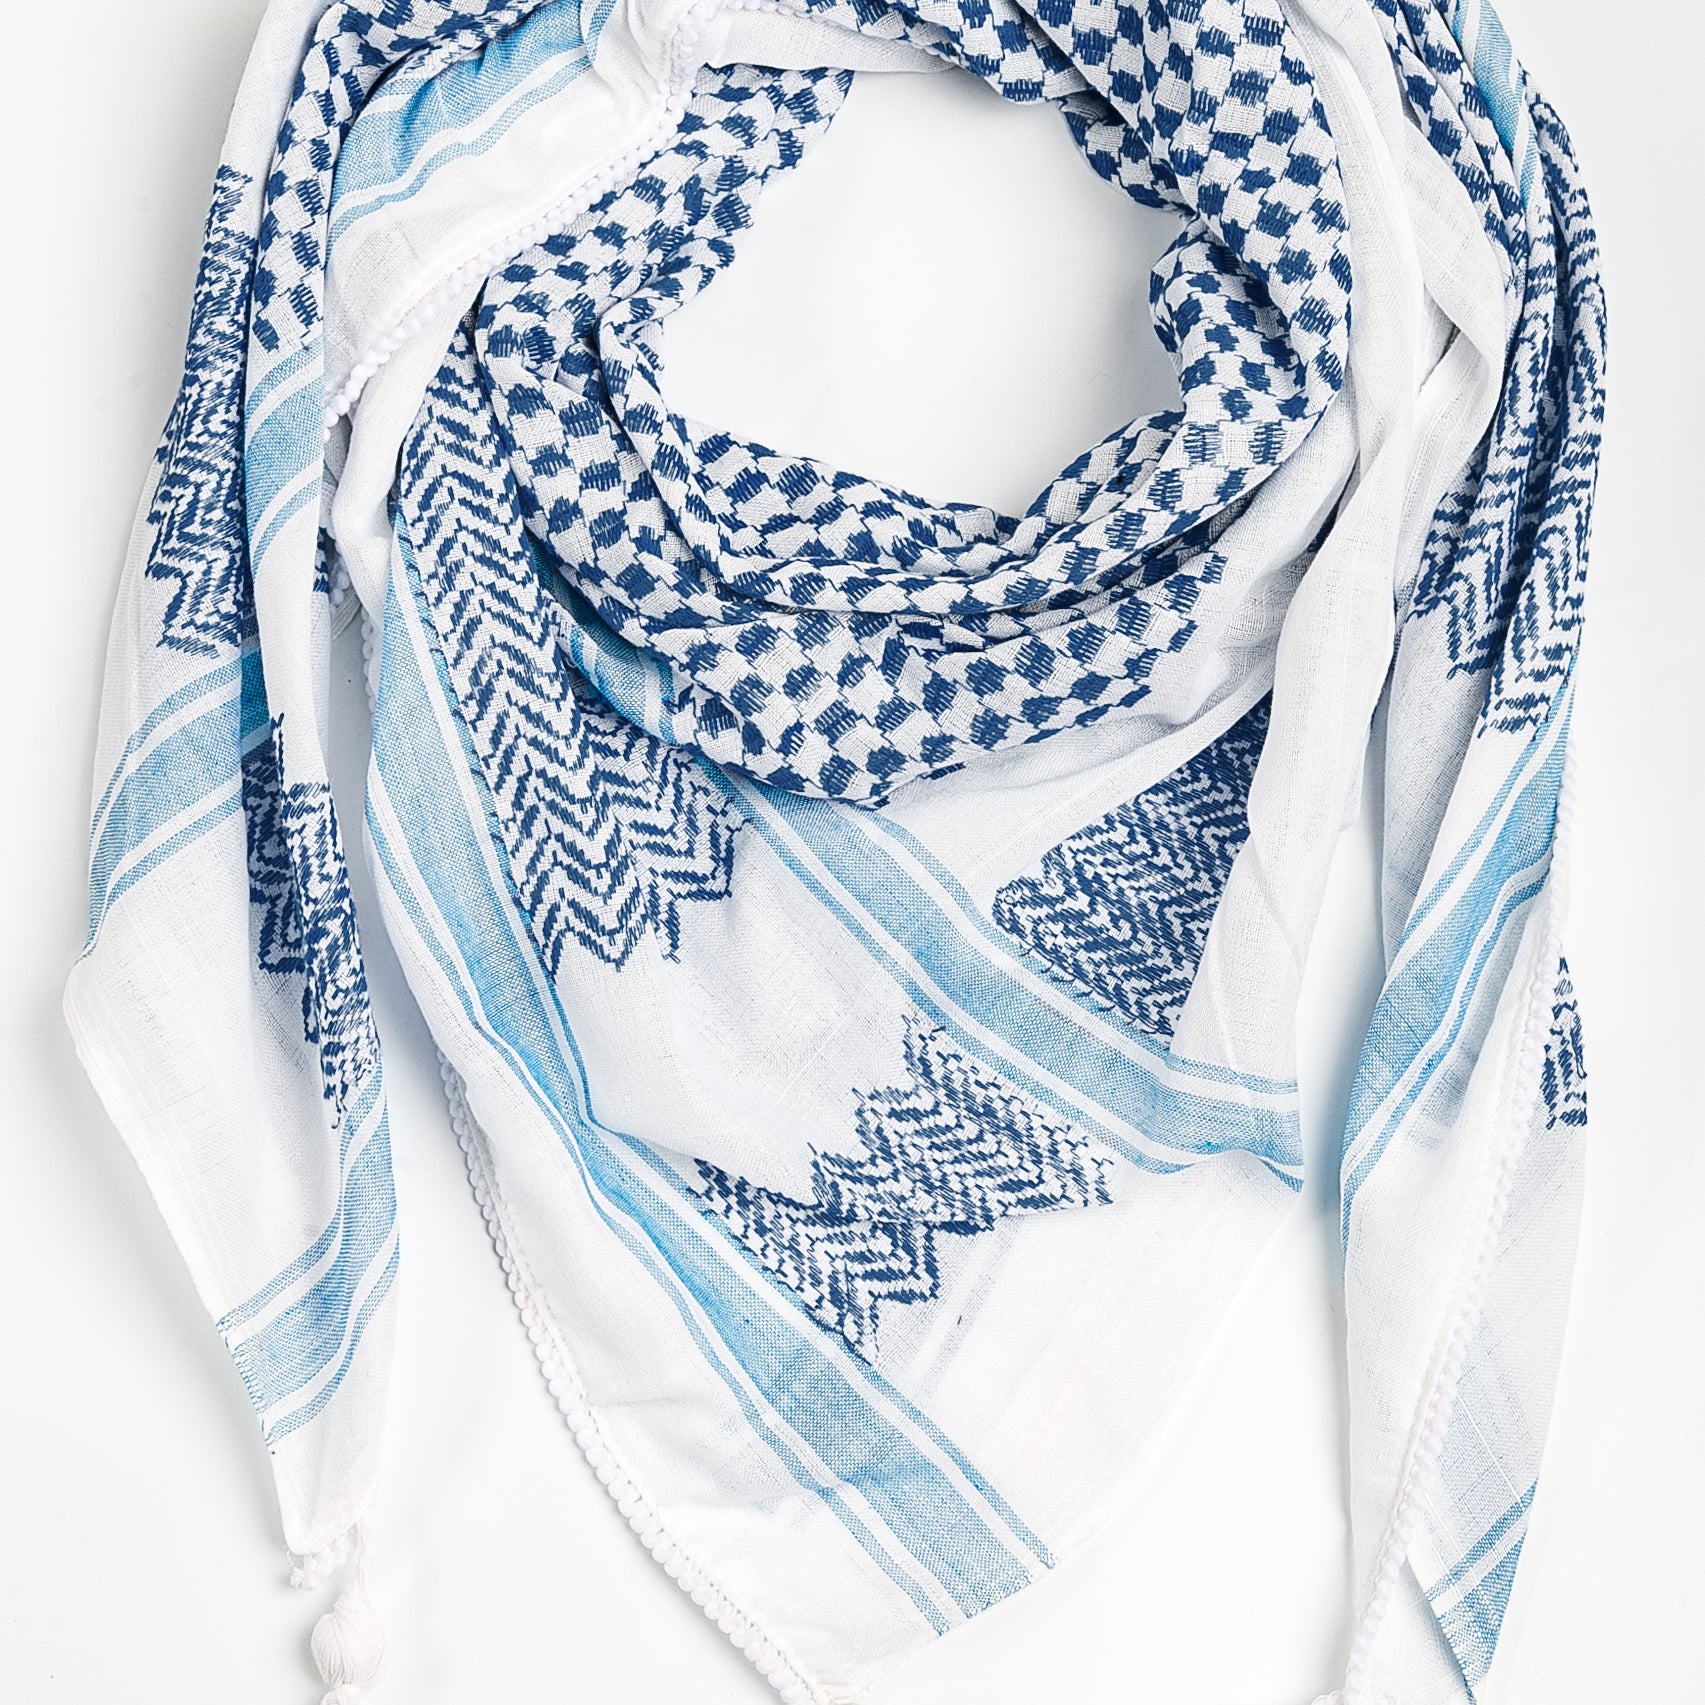 Palestinian kufiya white and blue